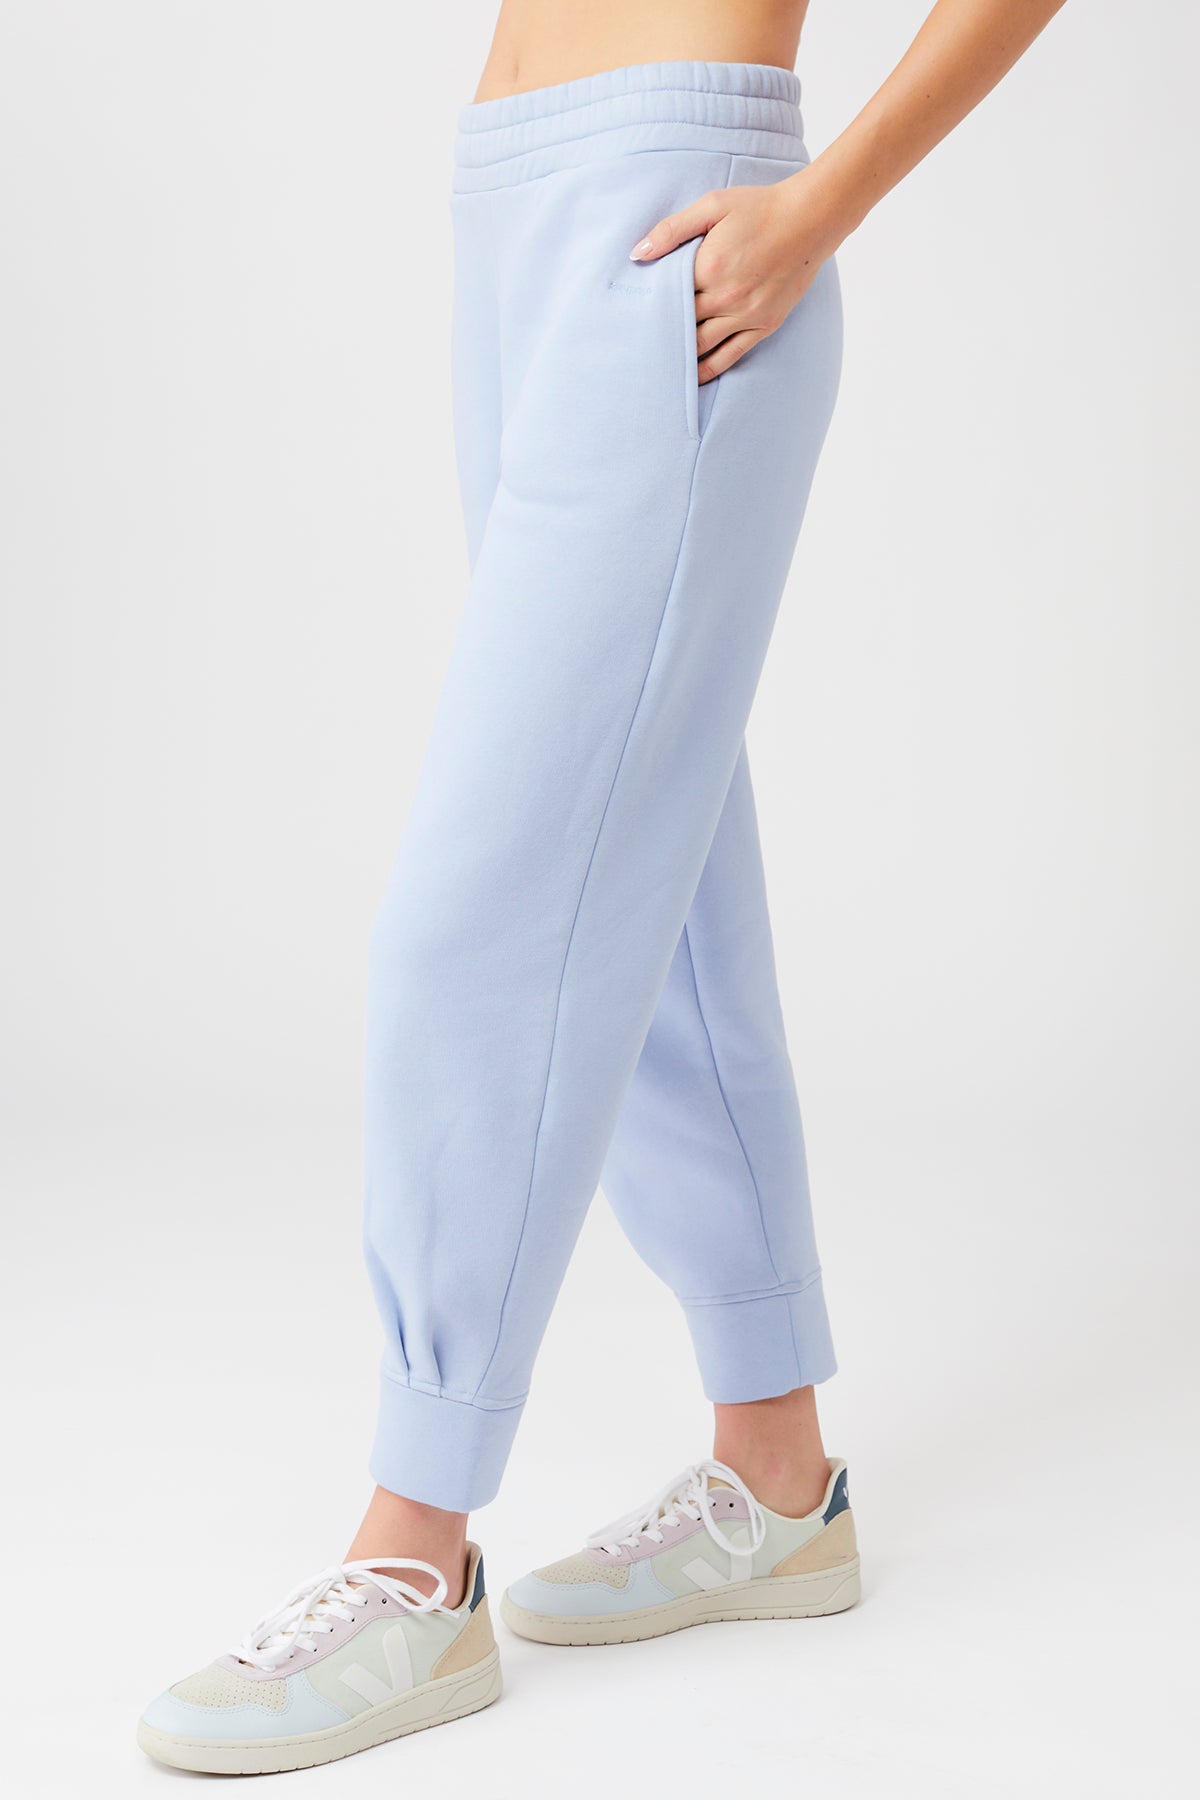 Circuit Women's Sports Yoga Pants - Grey - Size 18